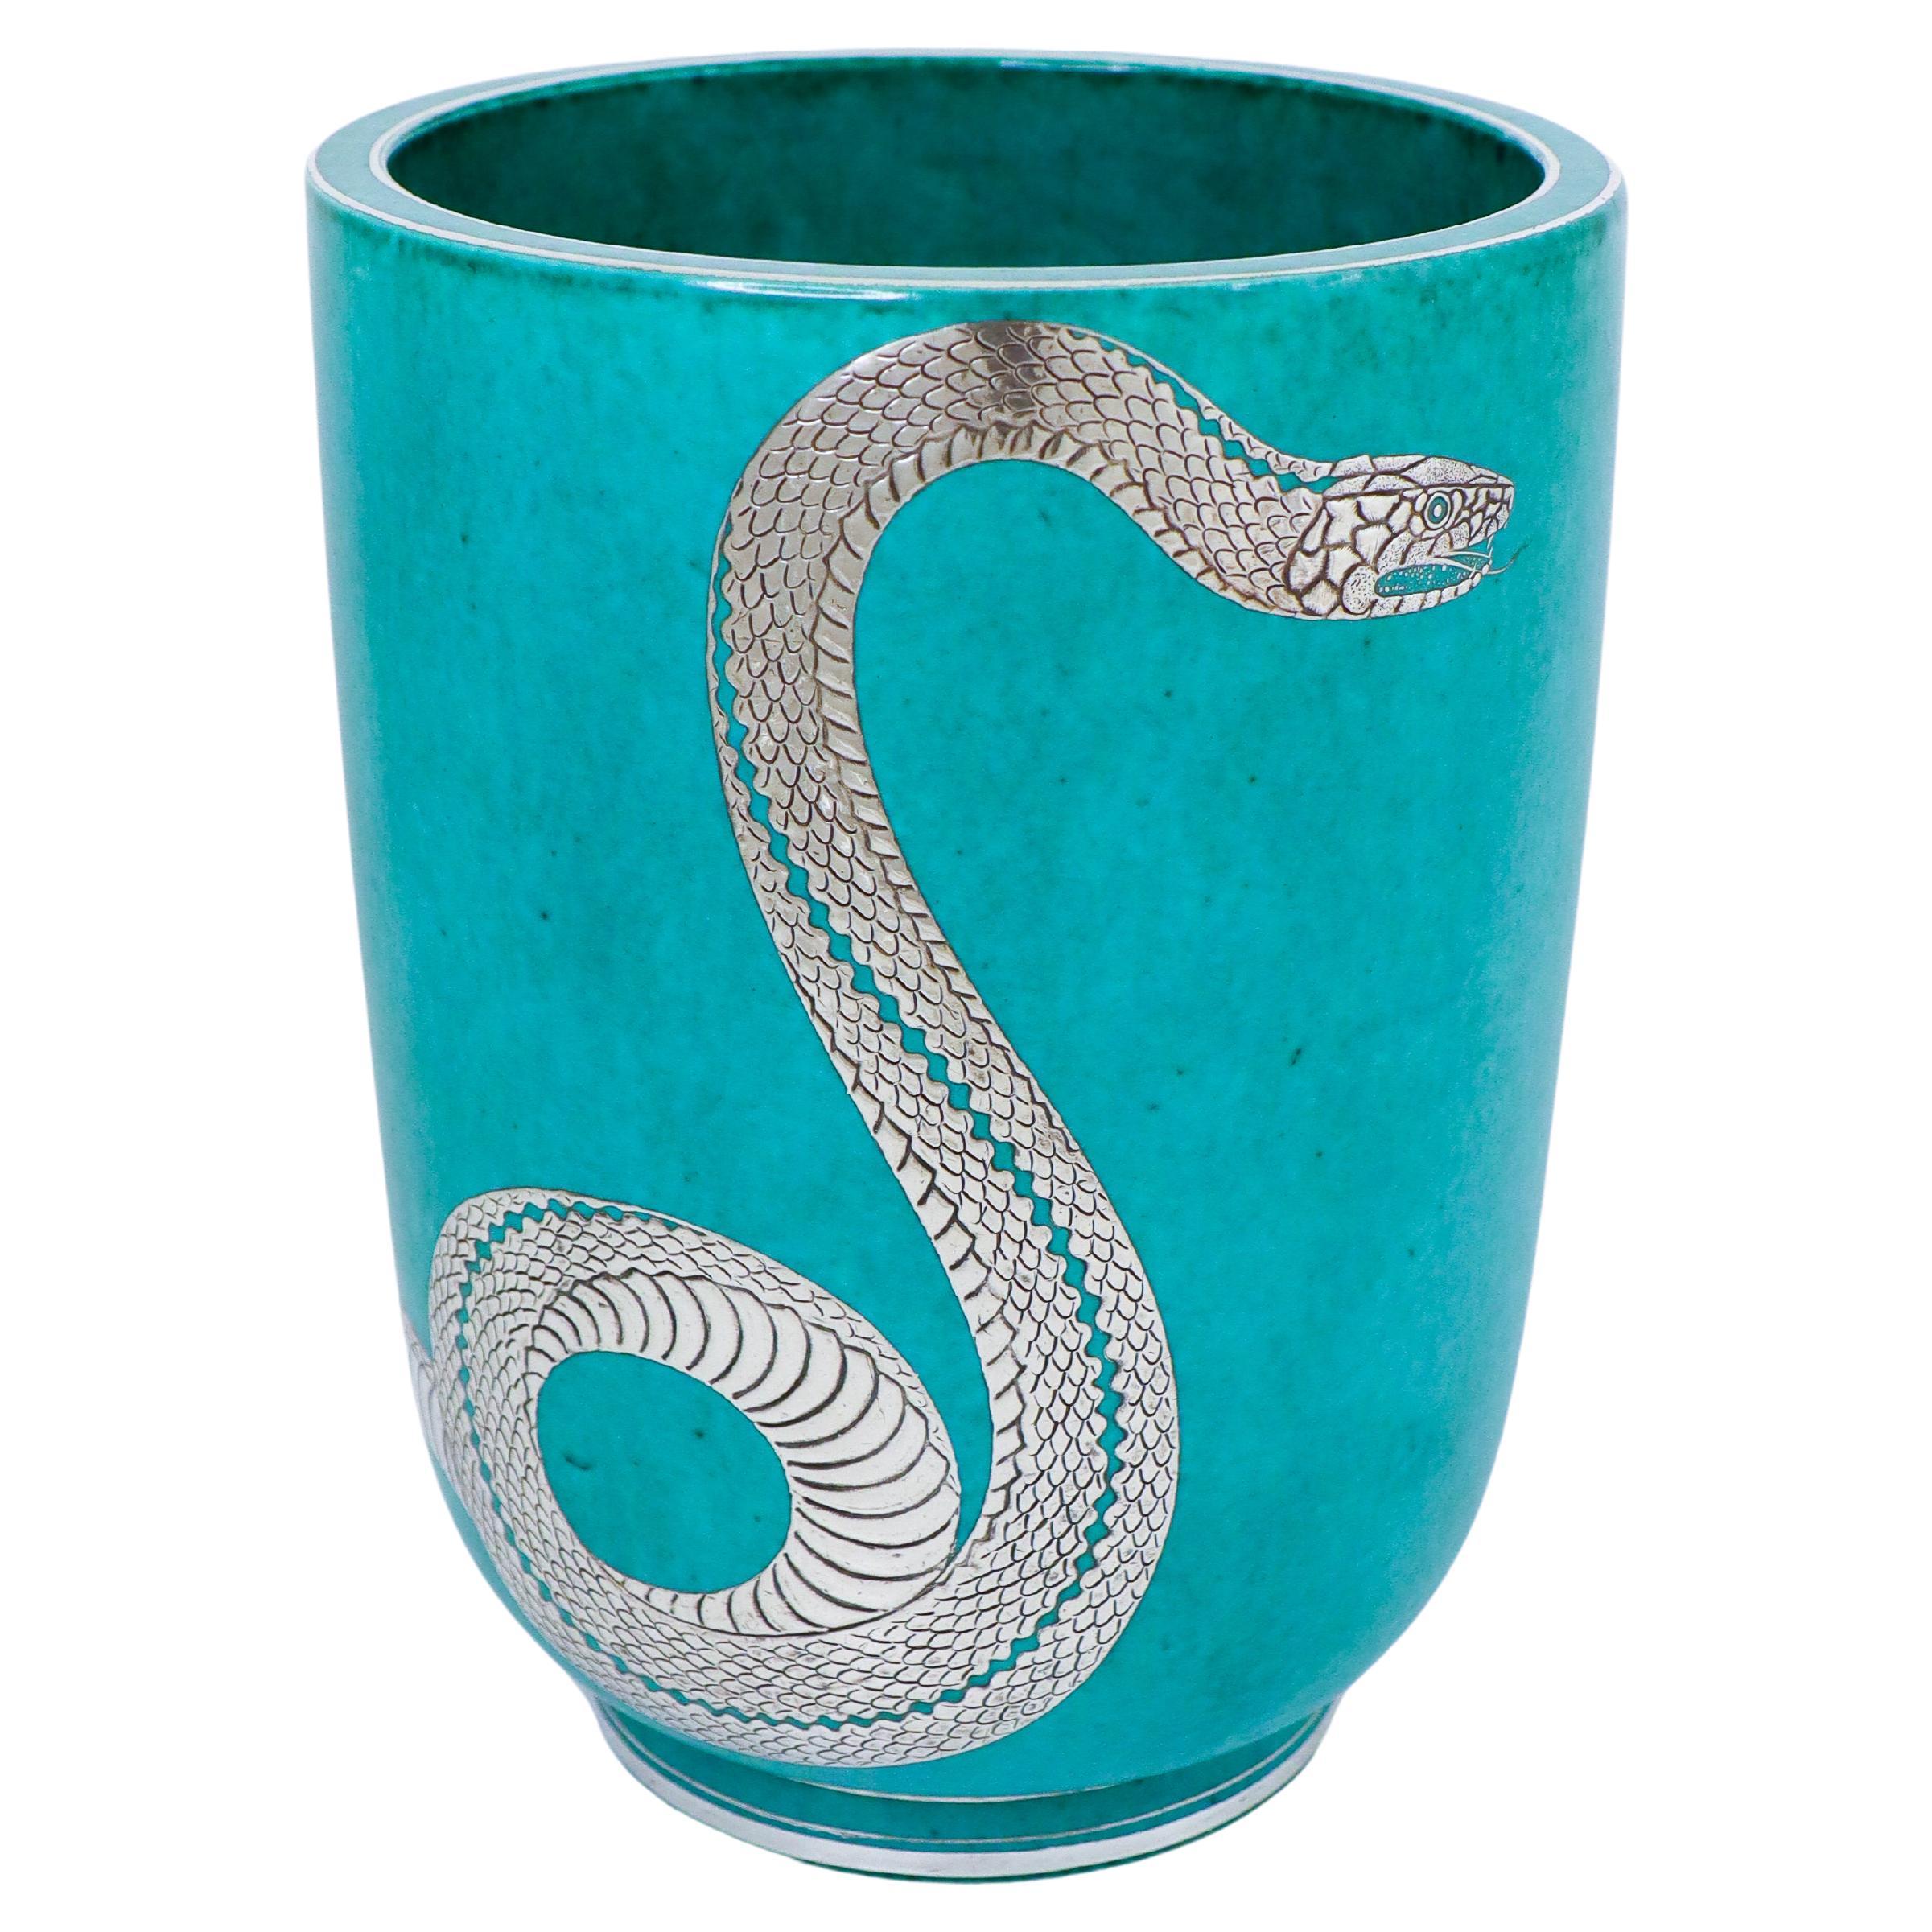 Super Rare Green Large Vase Argenta - Wilhelm Kåge - Gustavsberg - Snake For Sale